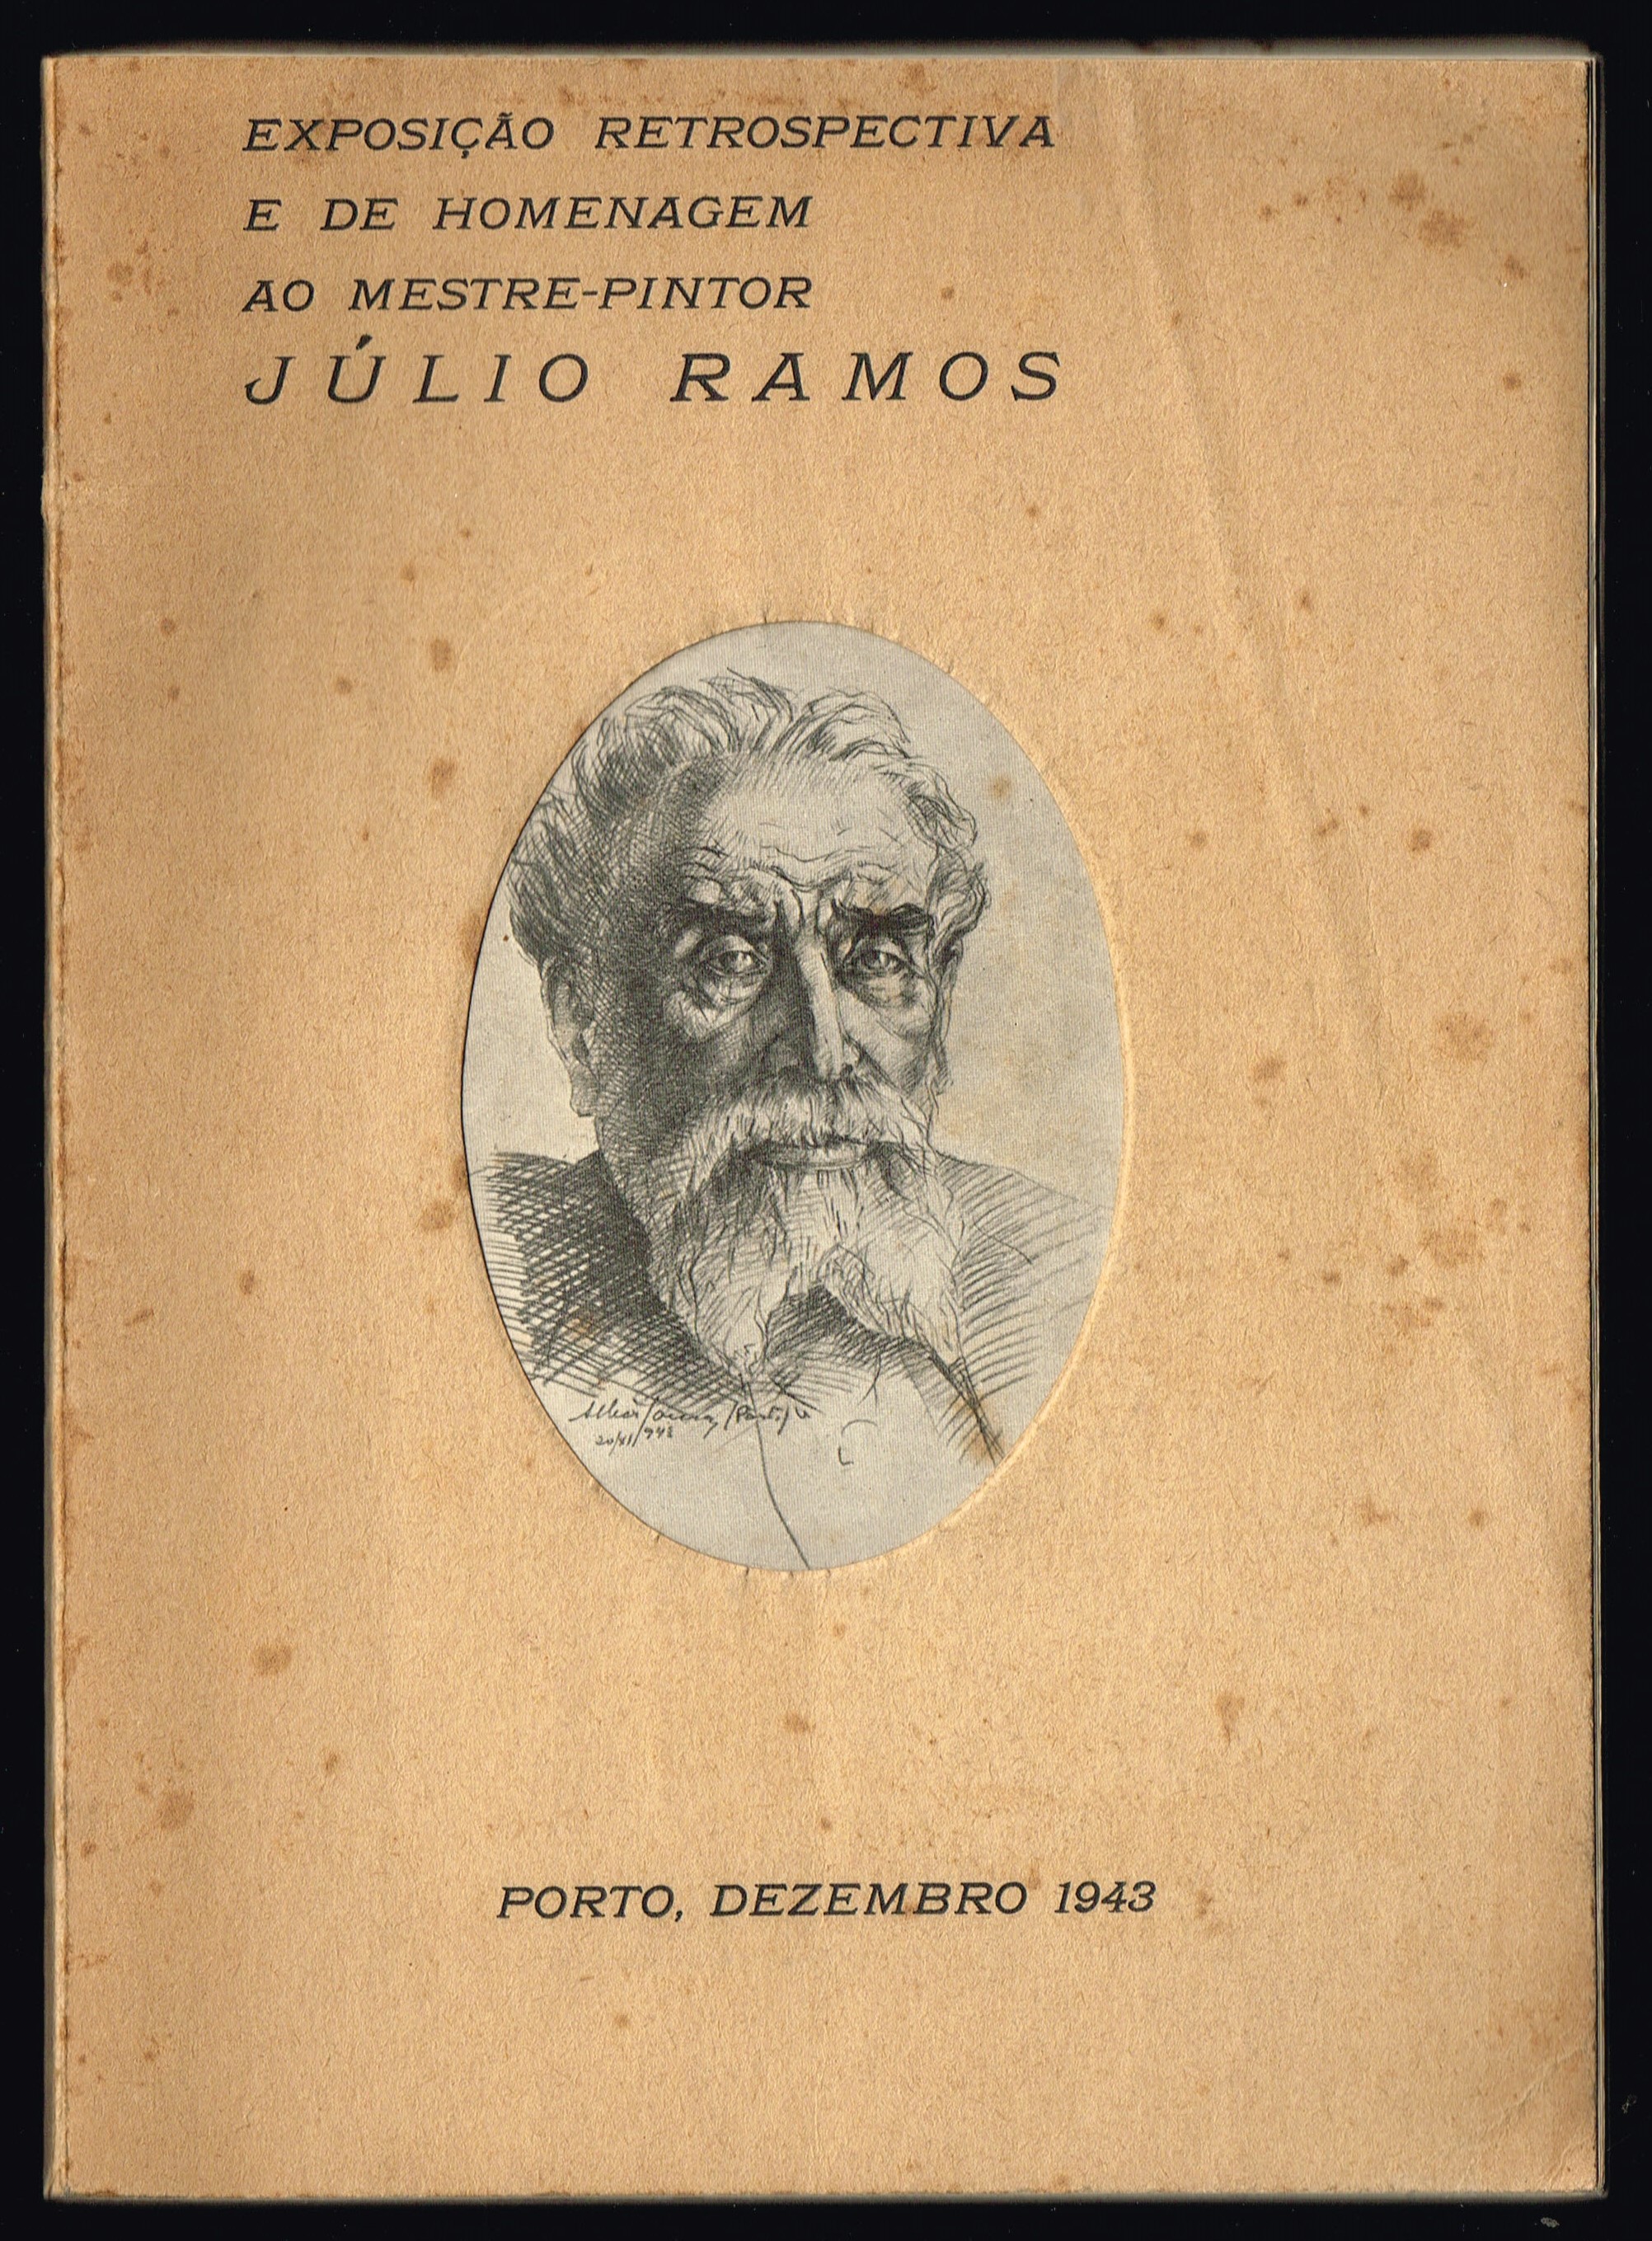 Exposio retrospectiva e de homenagem ao mestre-pintor JLIO RAMOS